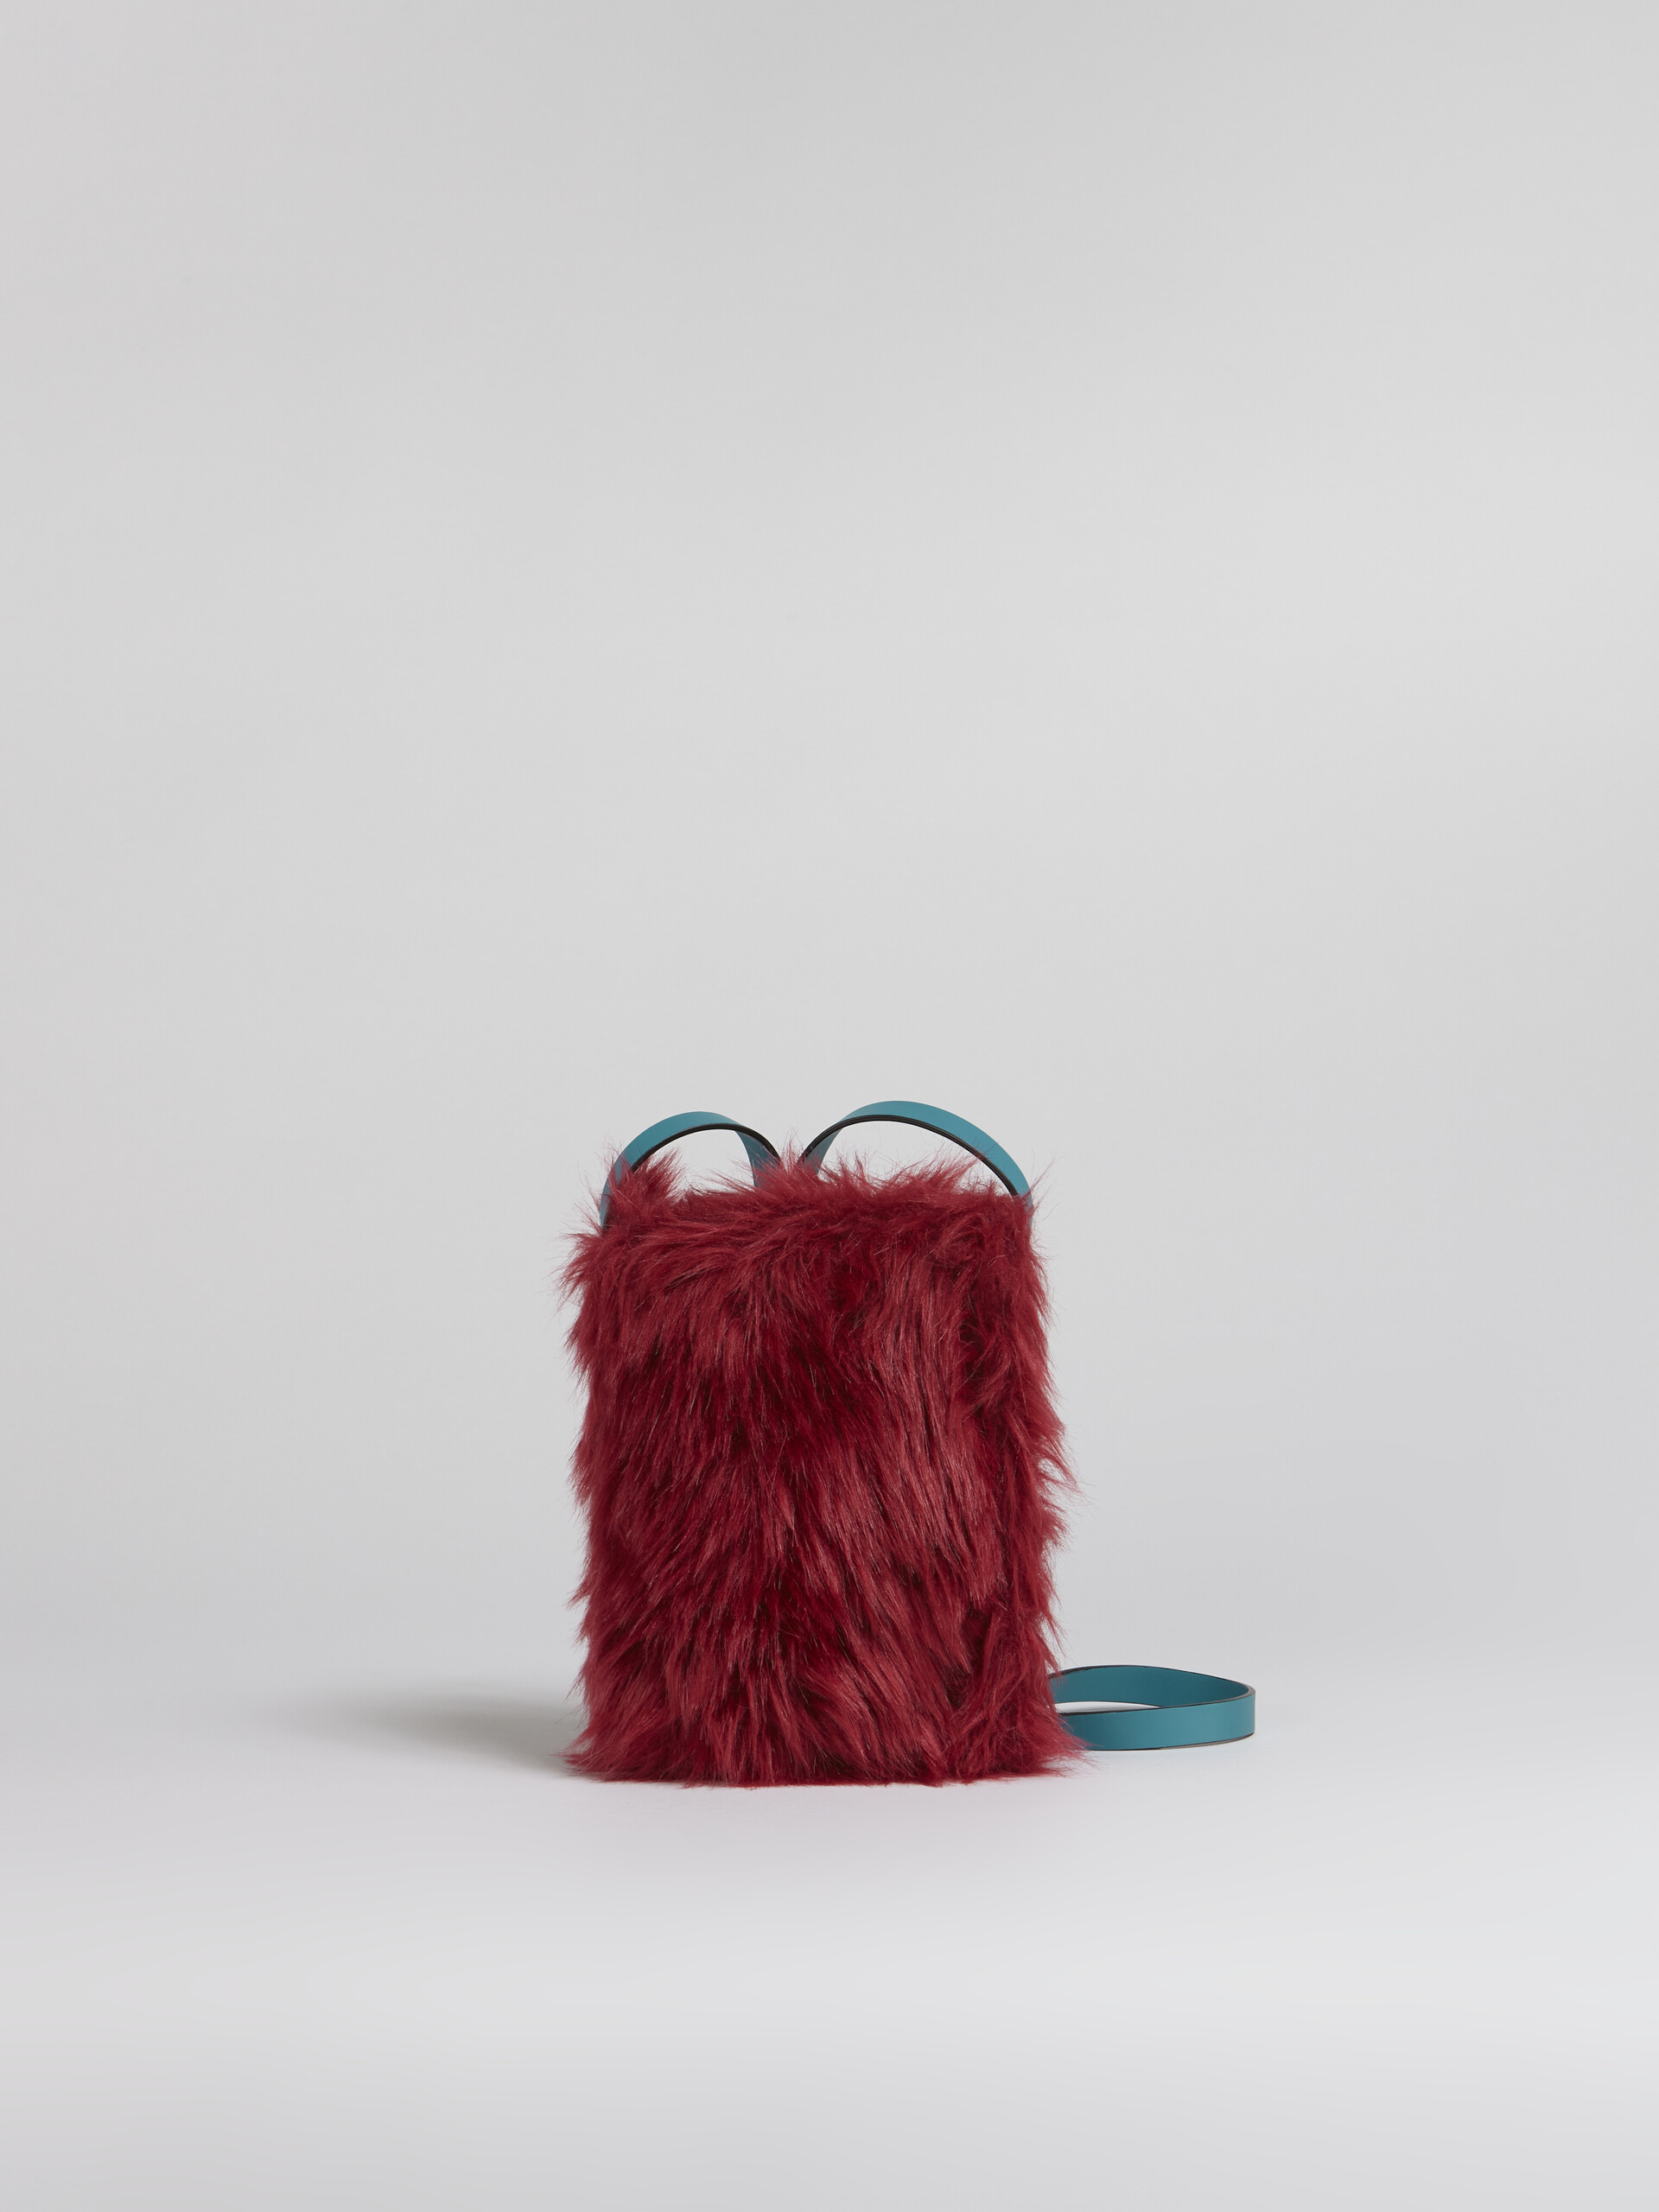 Borsa  MUSEO SOFT in tessuto teddy rosso - Borse a spalla - Image 1